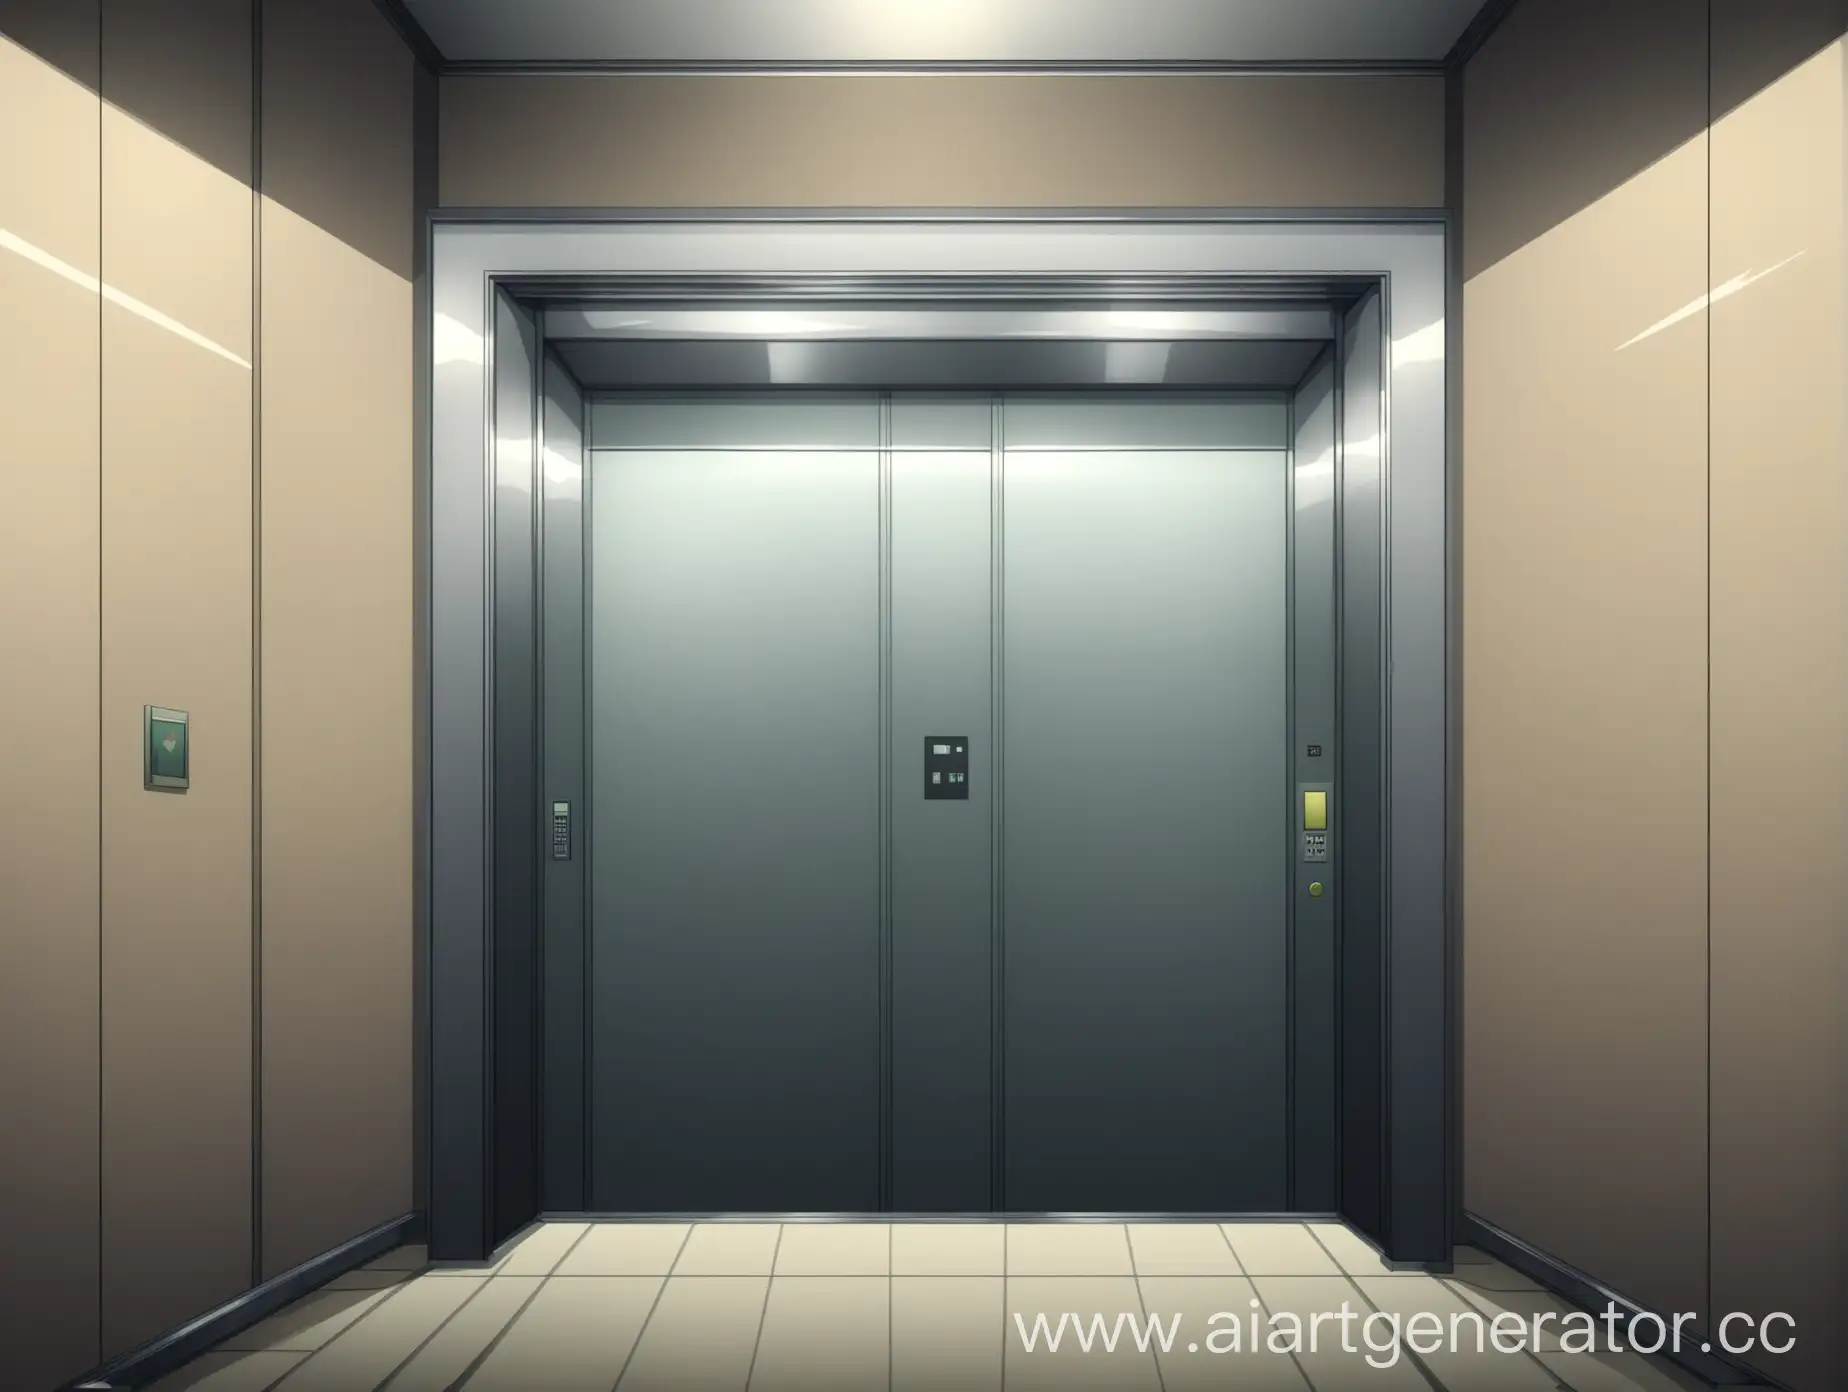 лифт изнутри, фон, аниме стиль, без людей